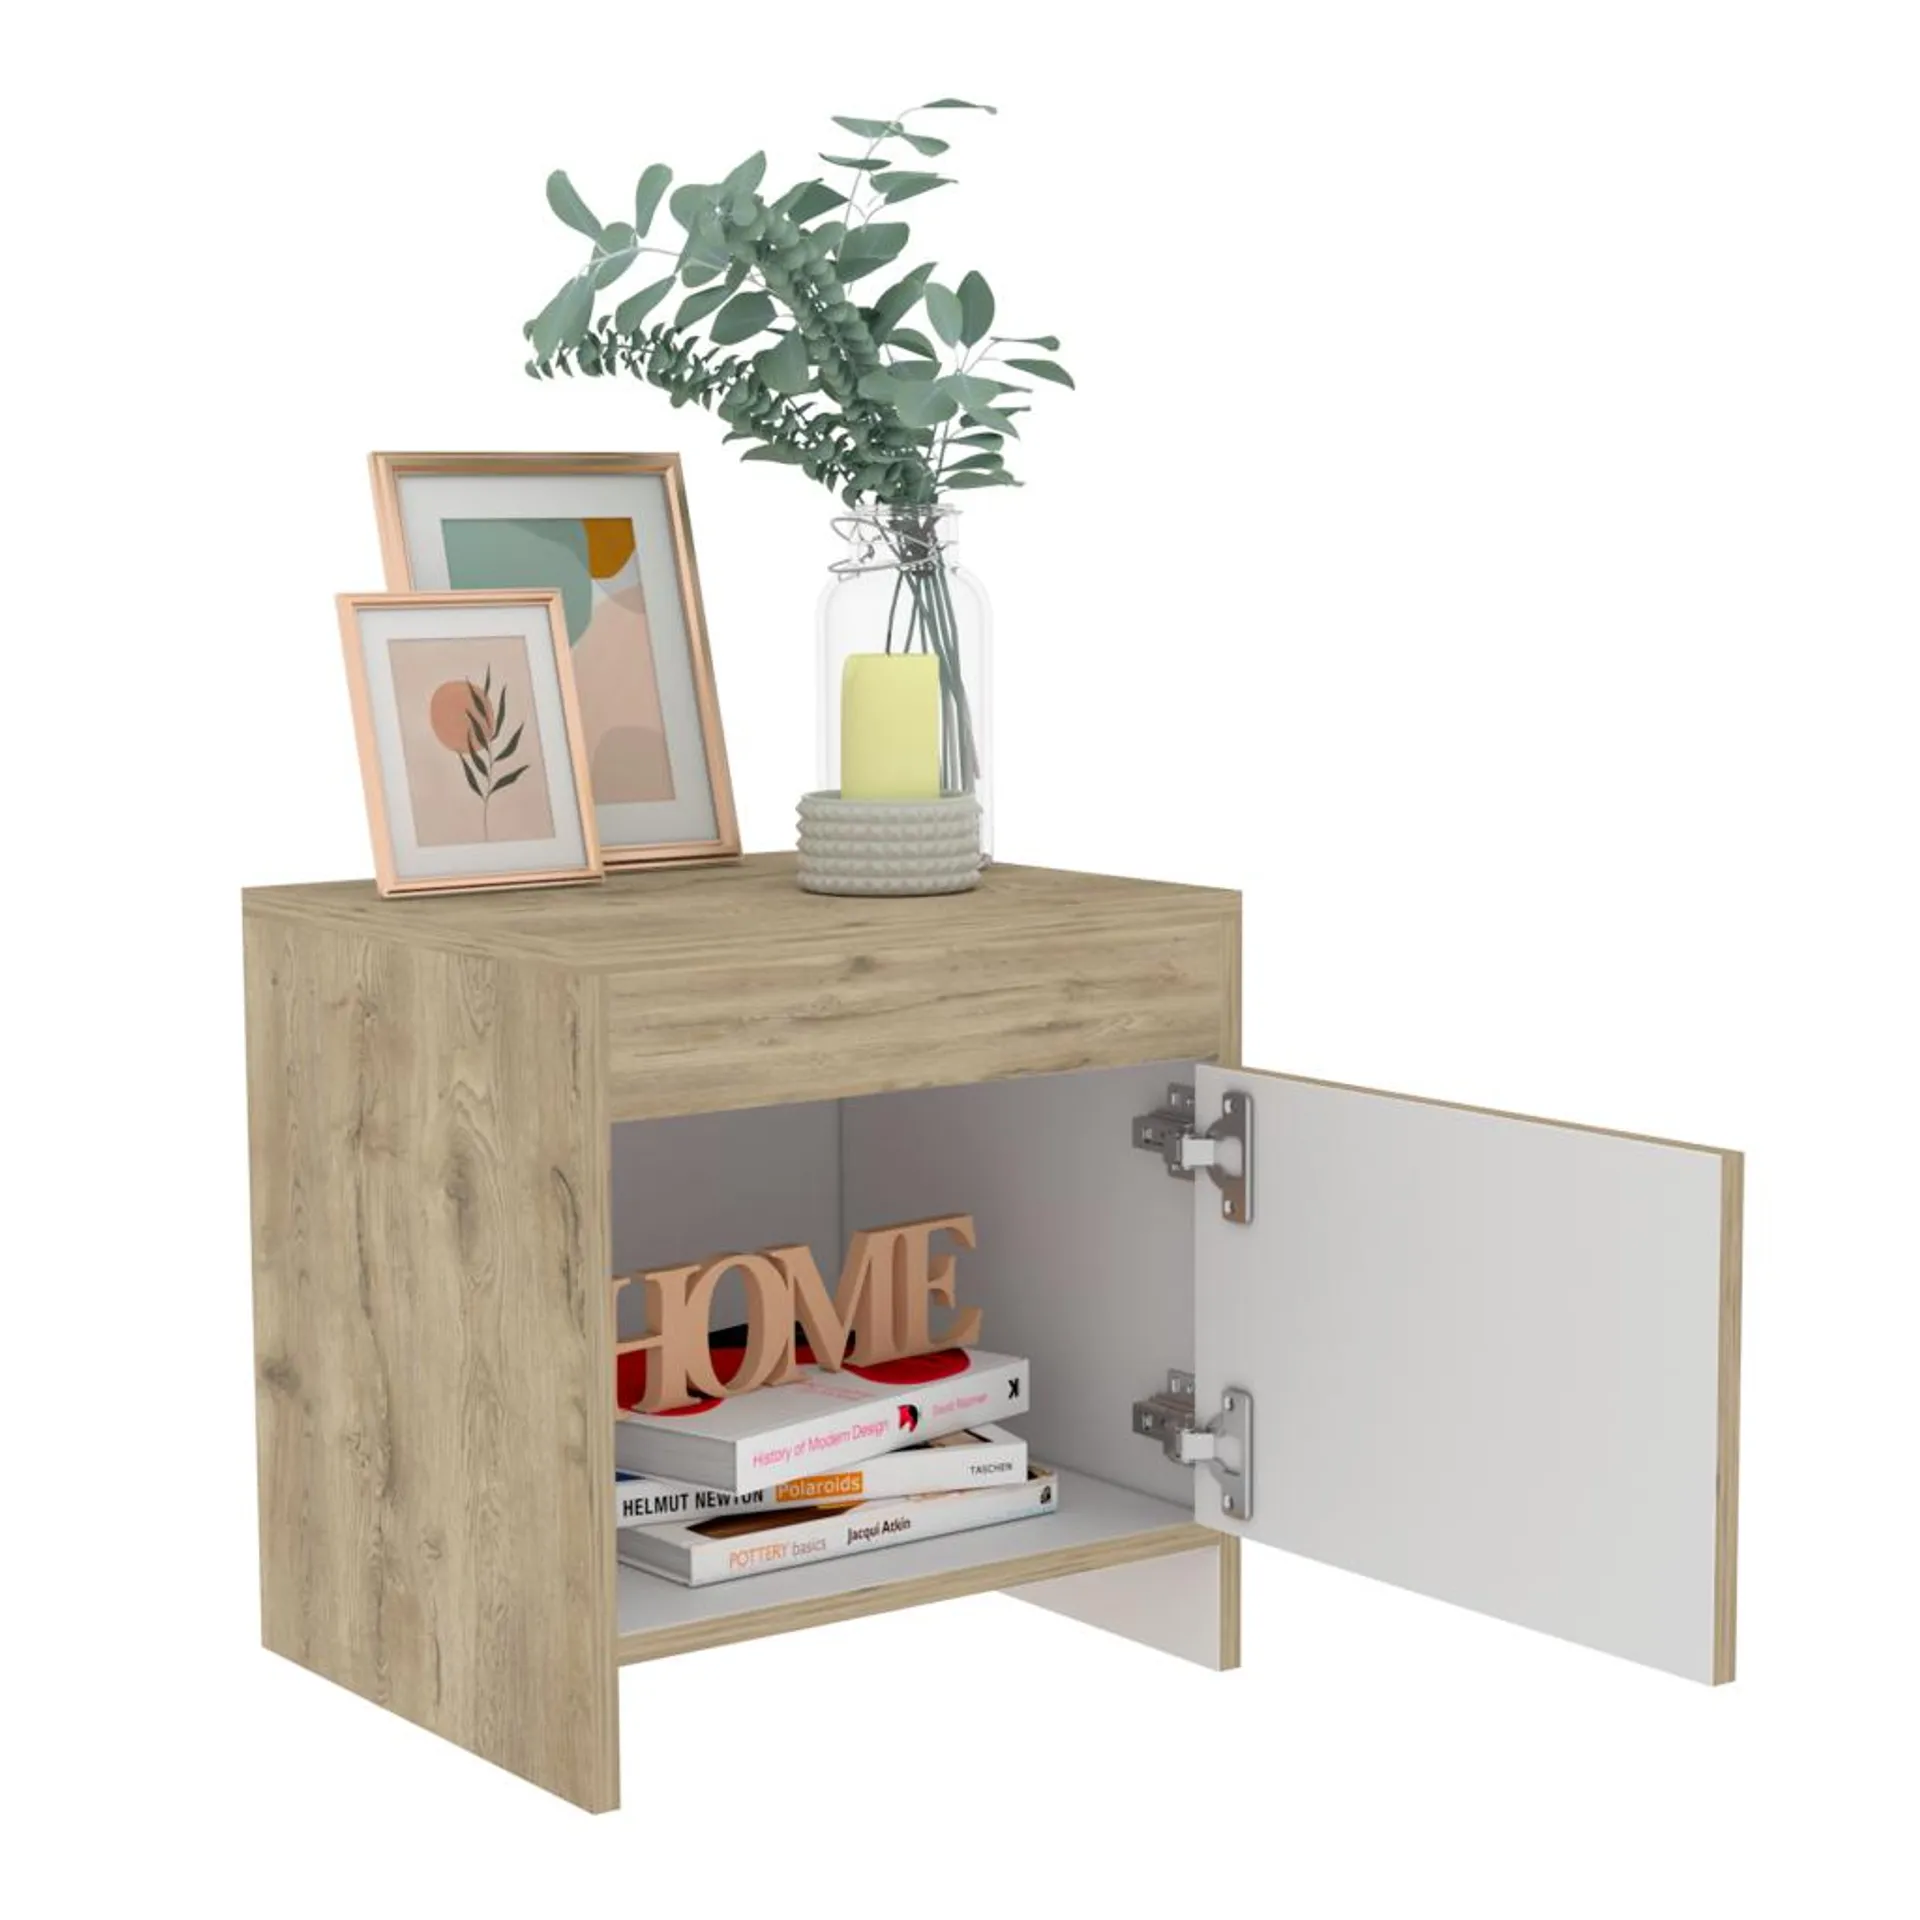 Mesa de noche tutto, macadamia y blanco, con cajón para guardar objetos ideal para espacios reducidos